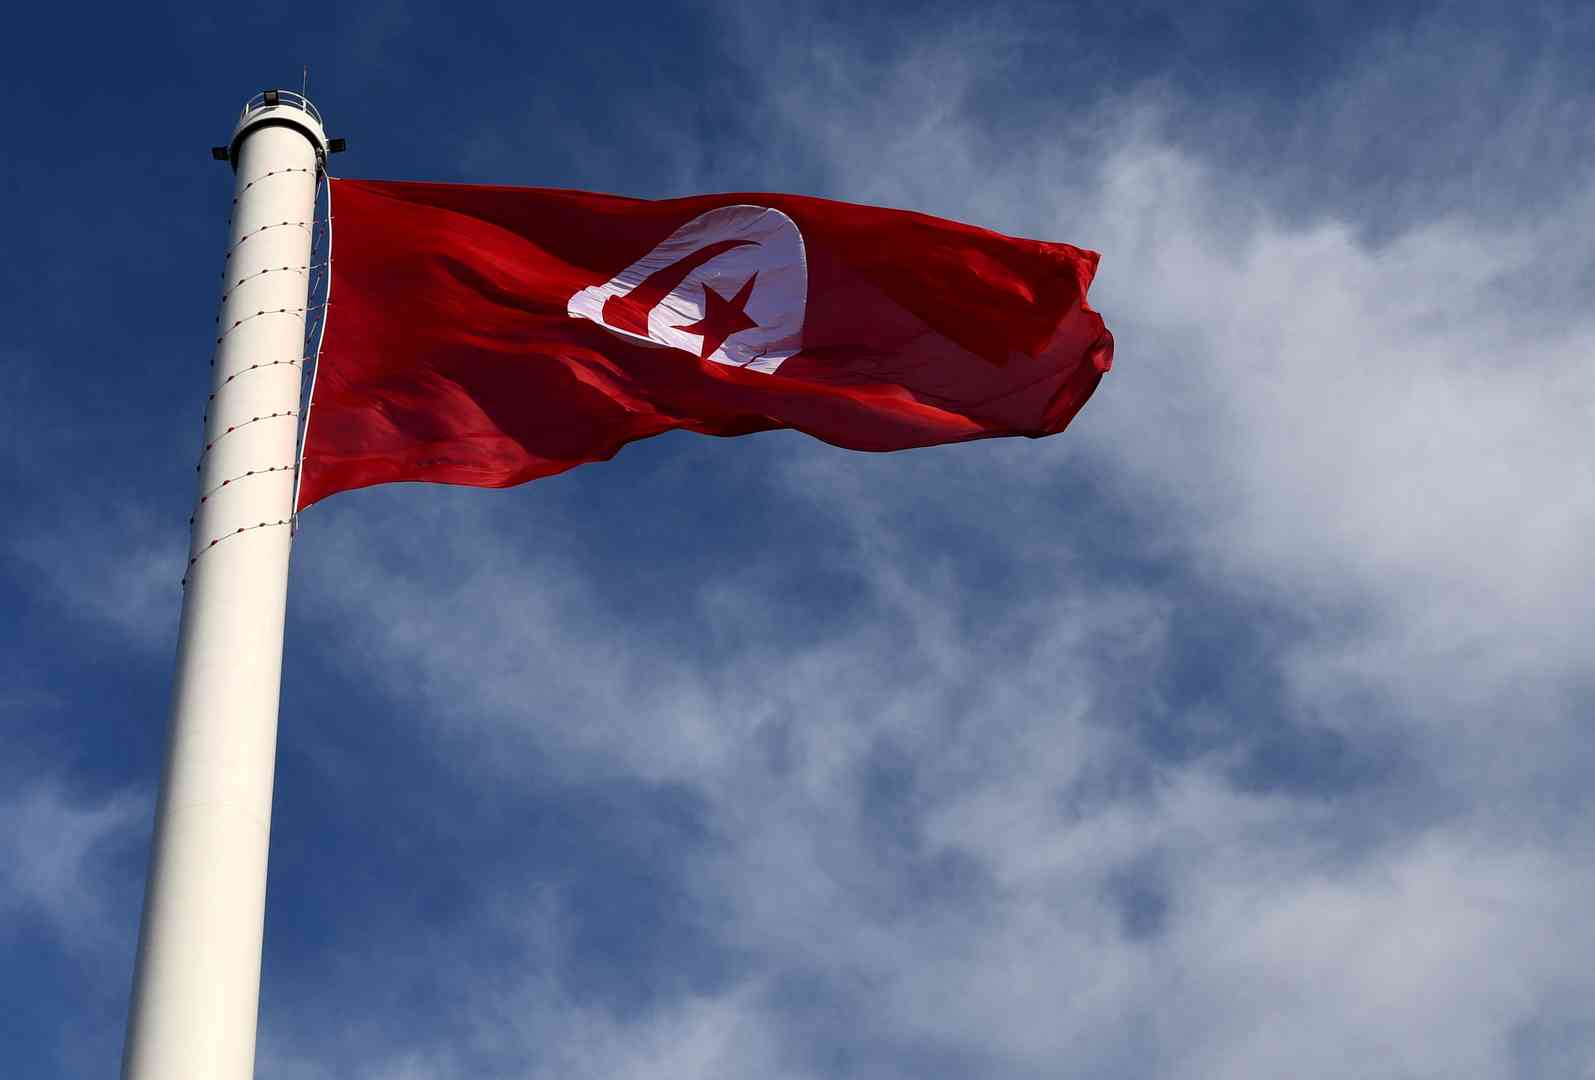 تونس تحتجز وزير سابق و7 مسؤولين آخرين بشبهة فساد